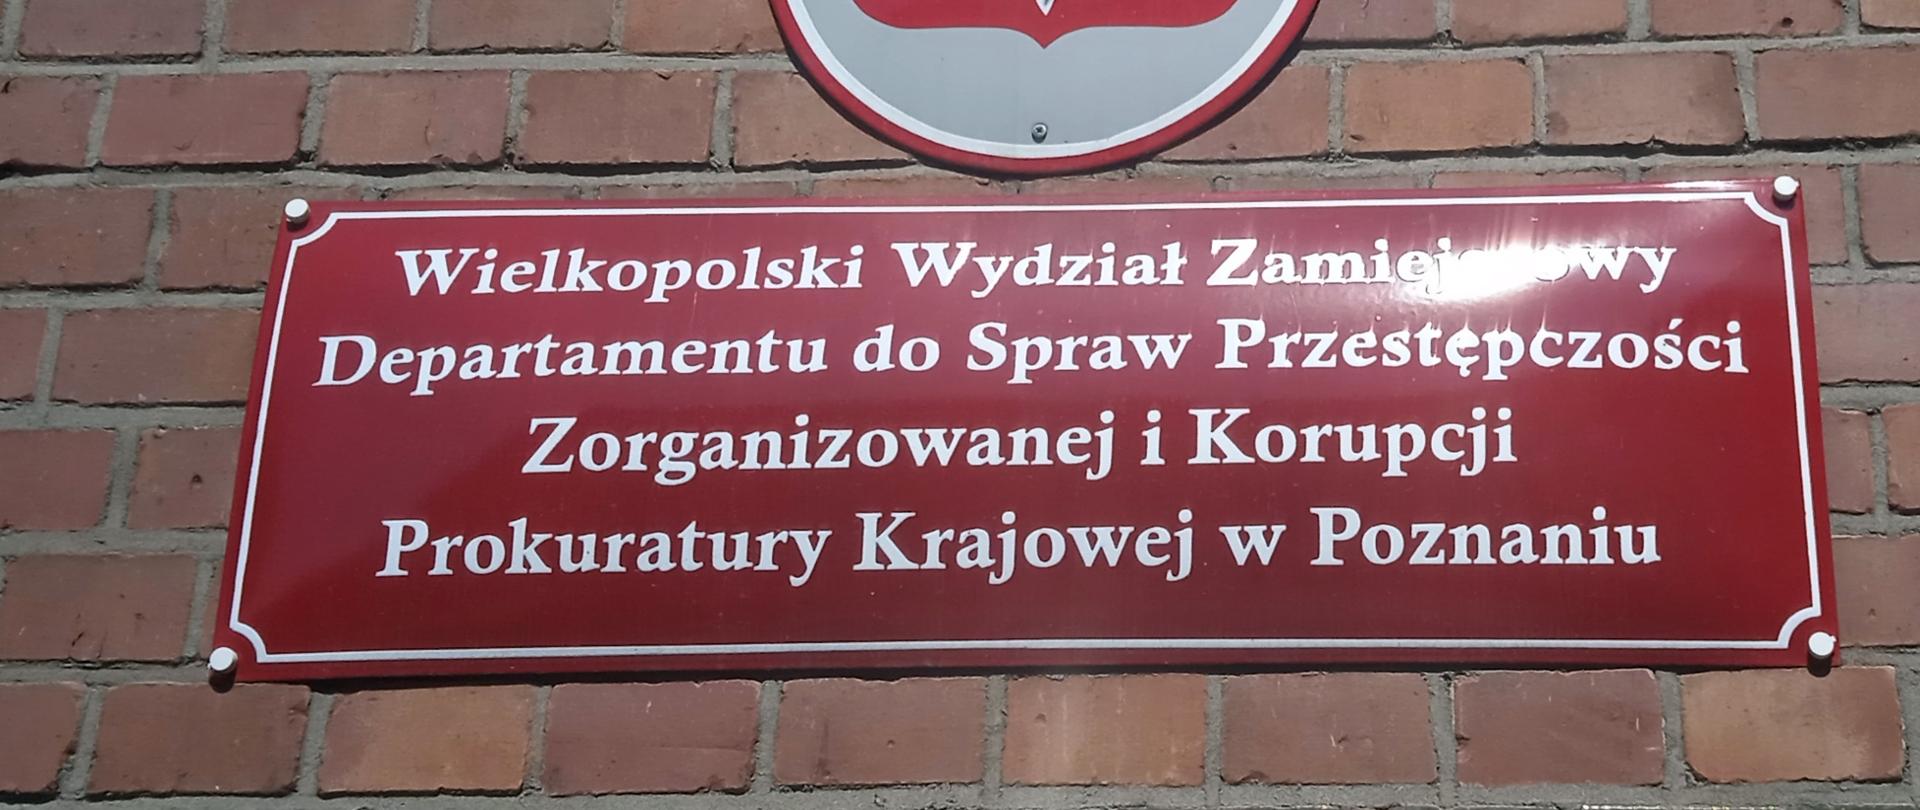 tabliczka Wielkopolskiego pionu PZ PK